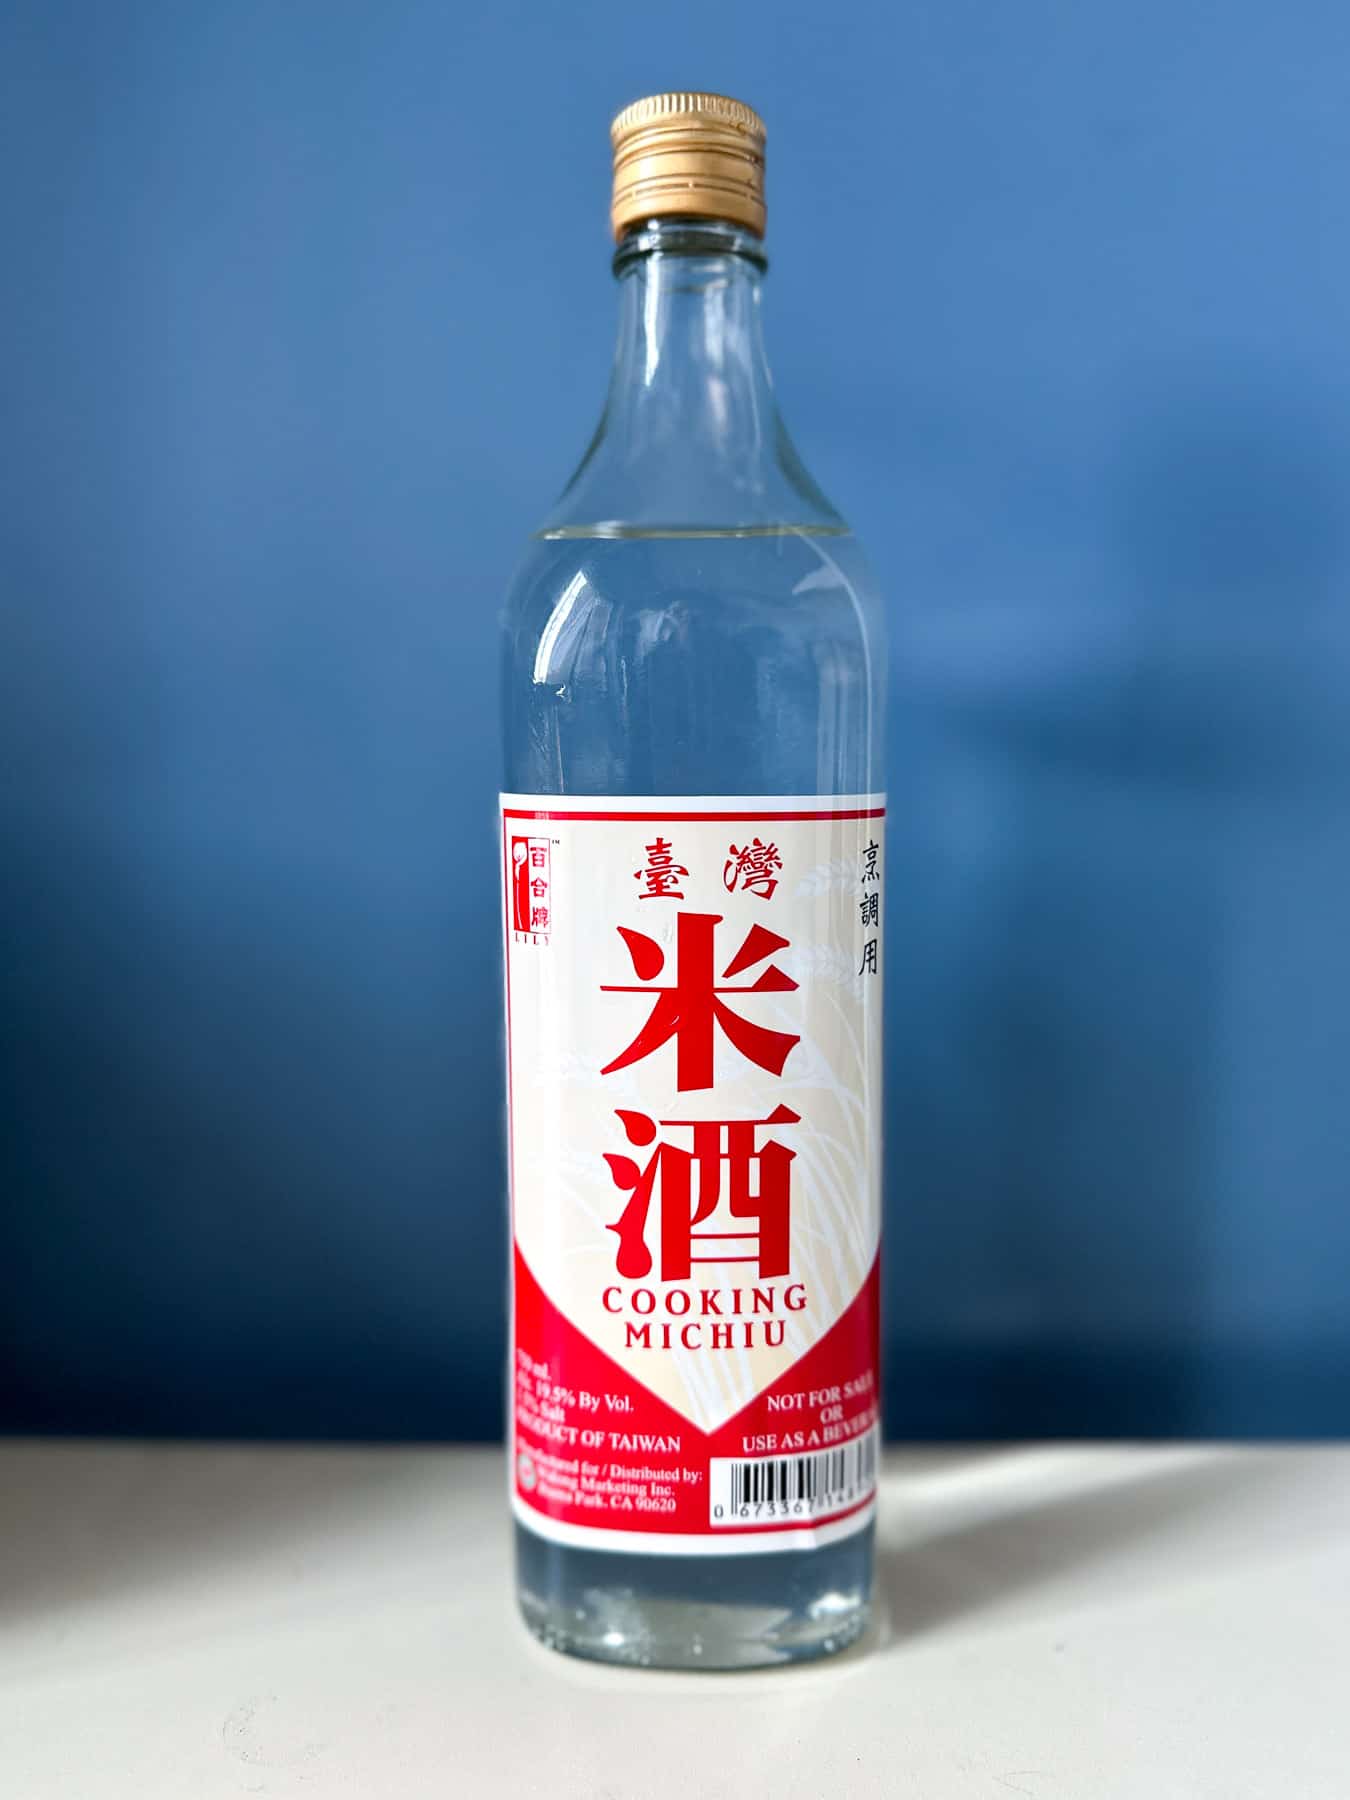 A bottle of Taiwanese rice wine (Michiu).